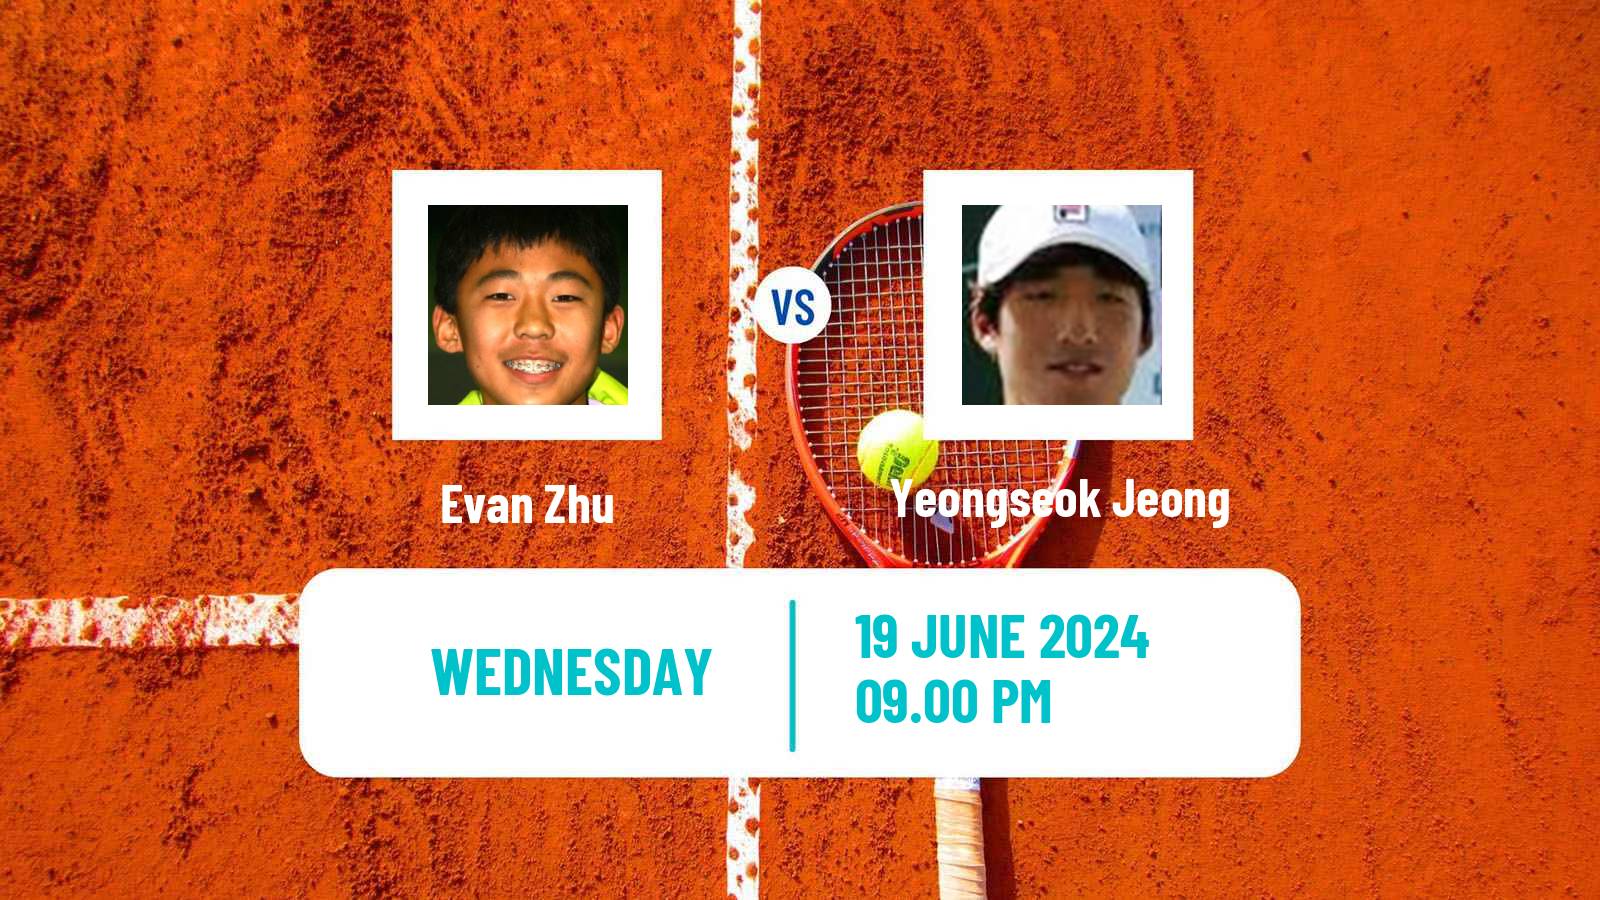 Tennis ITF M25 Changwon Men Evan Zhu - Yeongseok Jeong